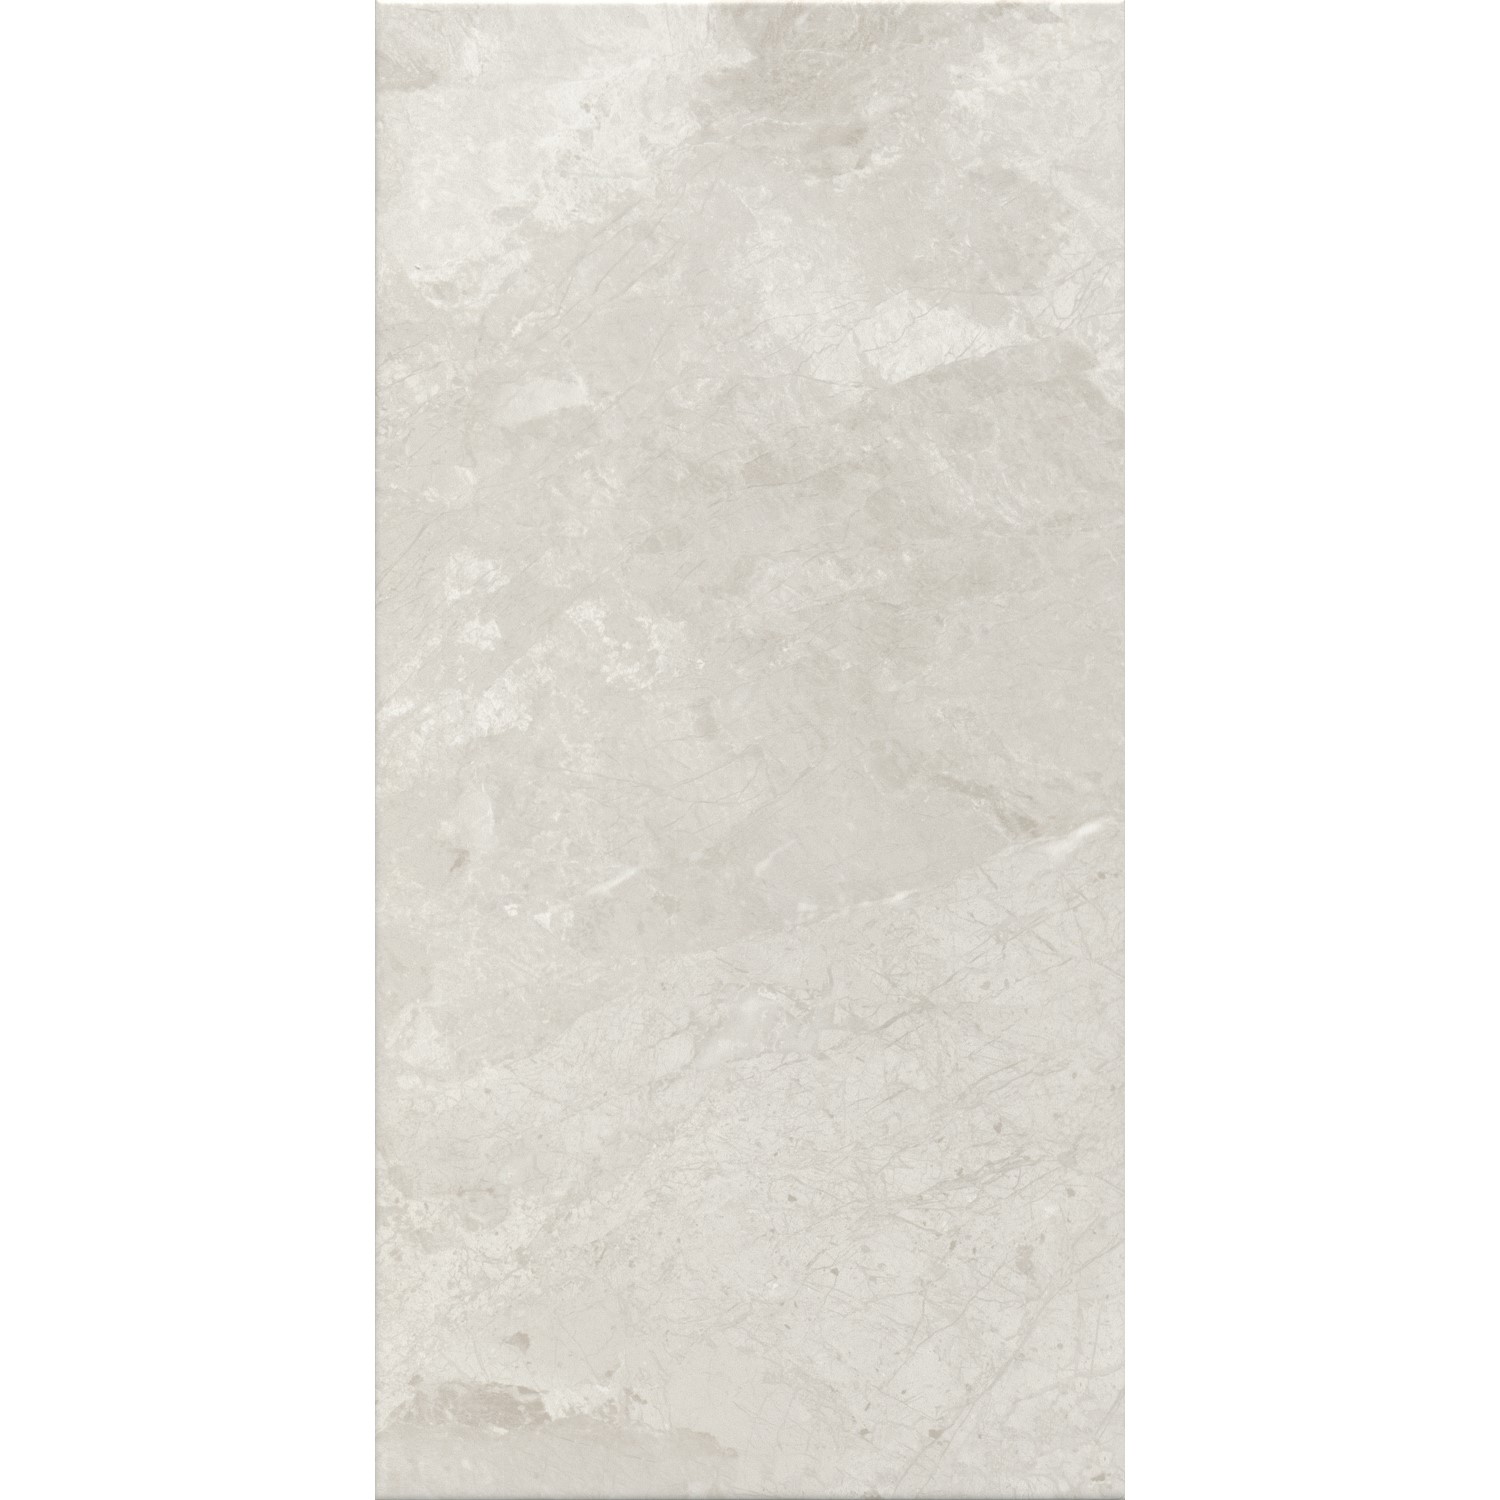 White Stone Effect Wall Tile 30 x 60cm - Pedra